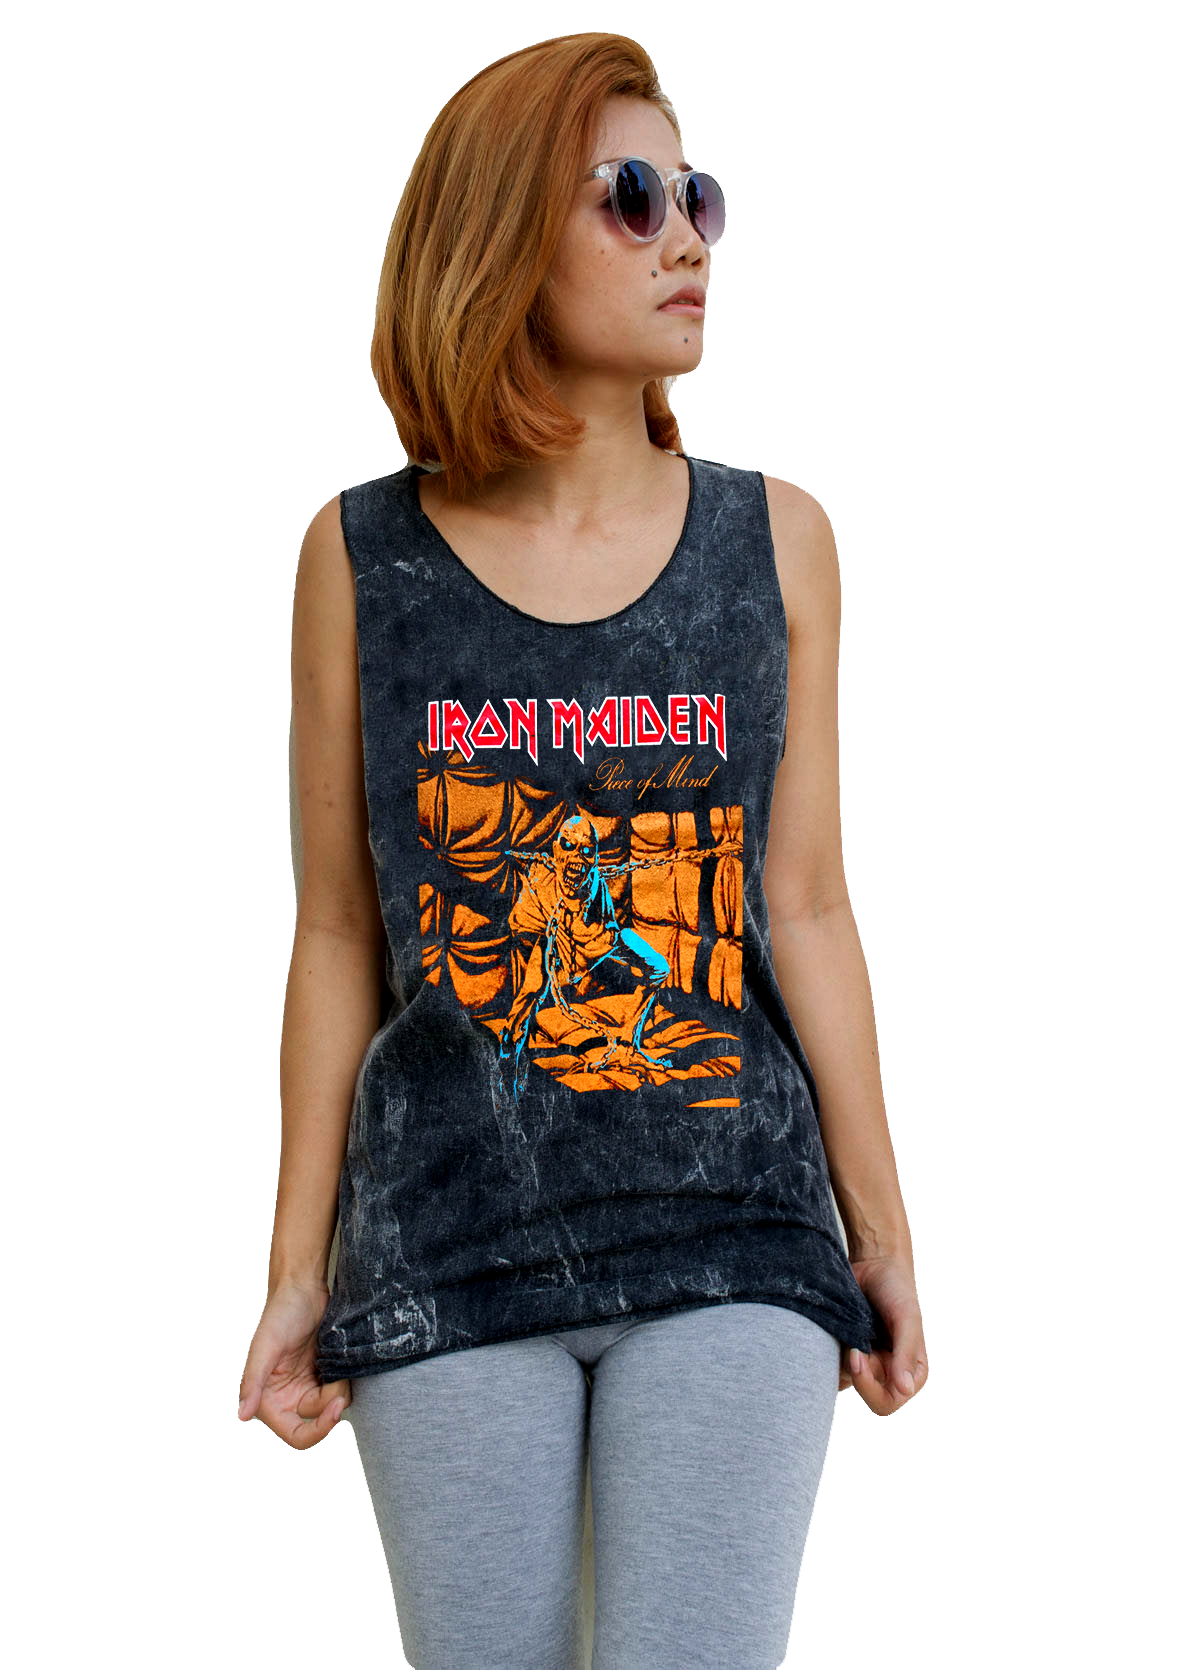 Unisex Iron Maiden Tank-Top Singlet vest Sleeveless T-shirt